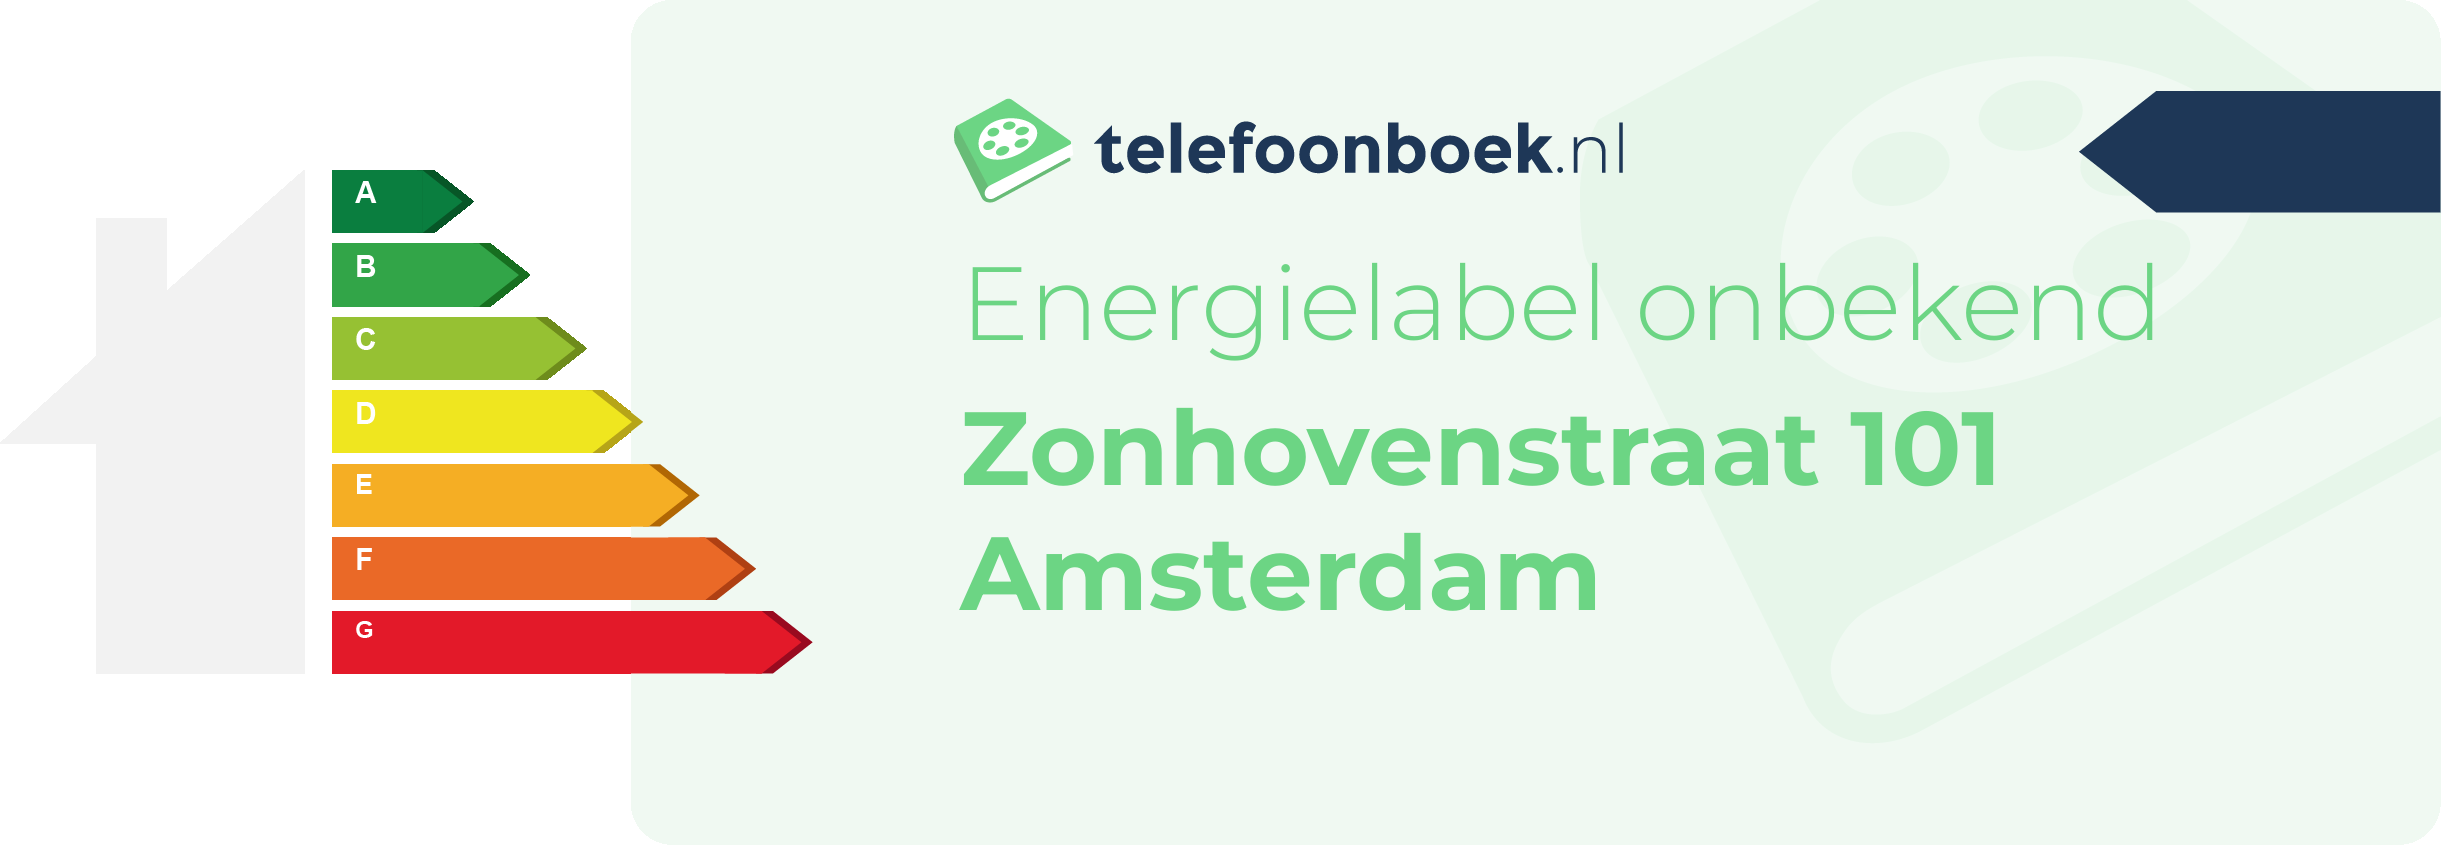 Energielabel Zonhovenstraat 101 Amsterdam